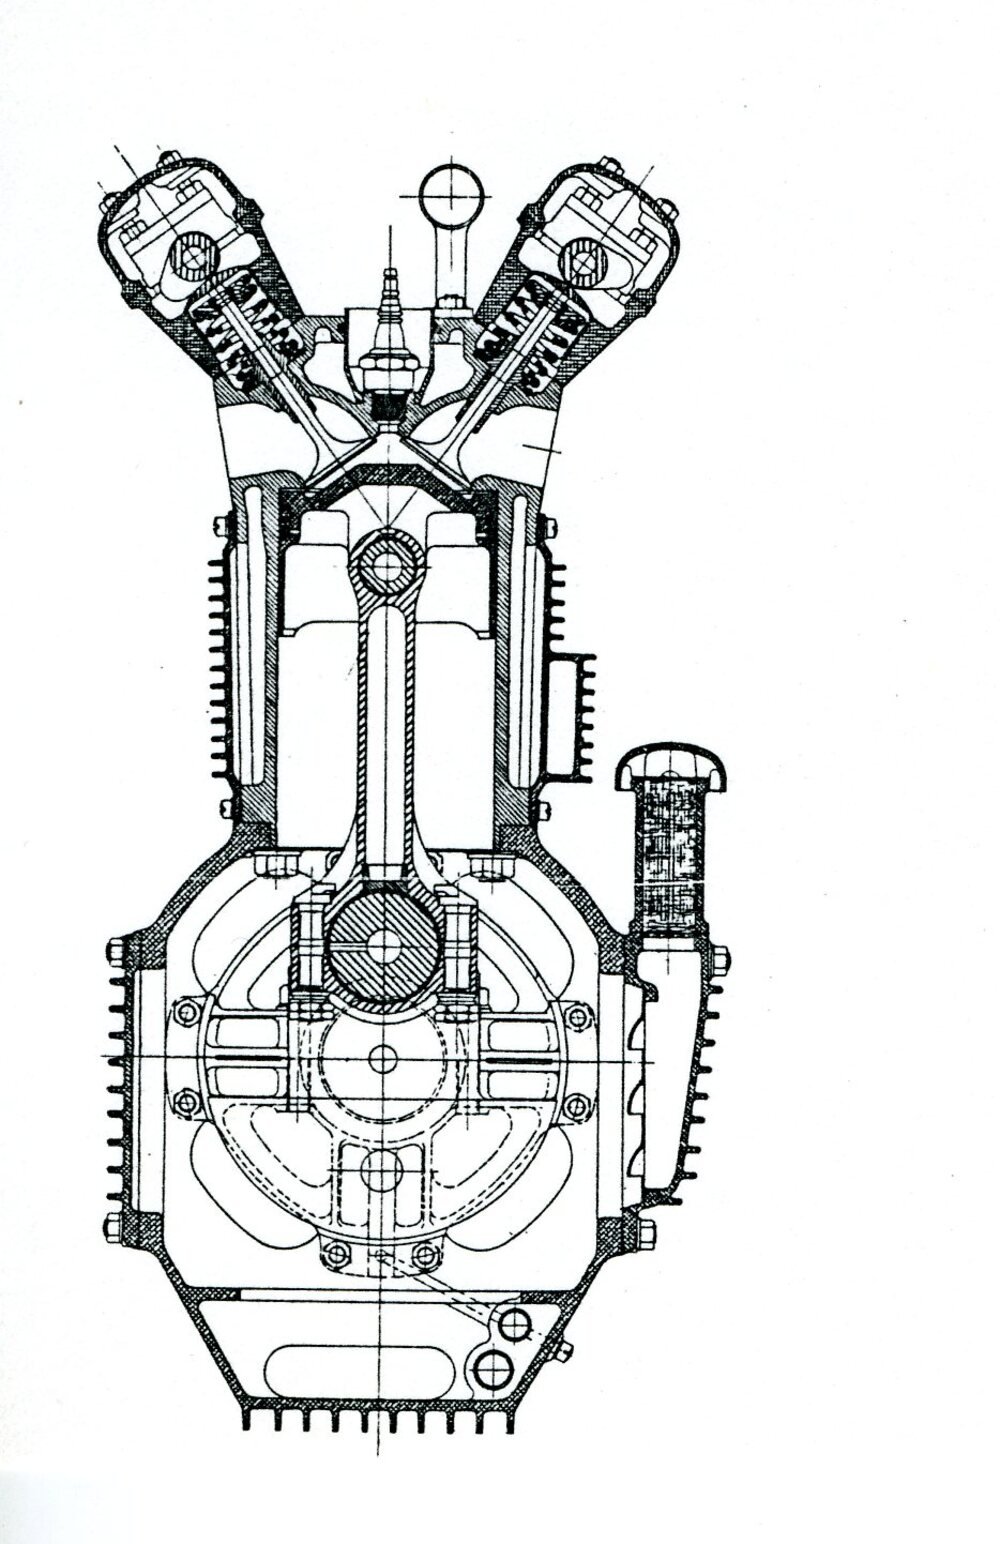 L&rsquo;immortale quattro cilindri Offenhauser che ha dominato a Indianapolis fino ai primi anni Sessanta &egrave; stato costruito con cilindrate unitarie di 1105 e di 1050 cm3. Questa sezione consente di osservare il basamento a tunnel e il gruppo cilindri/testa realizzato in un&rsquo;unica fusione